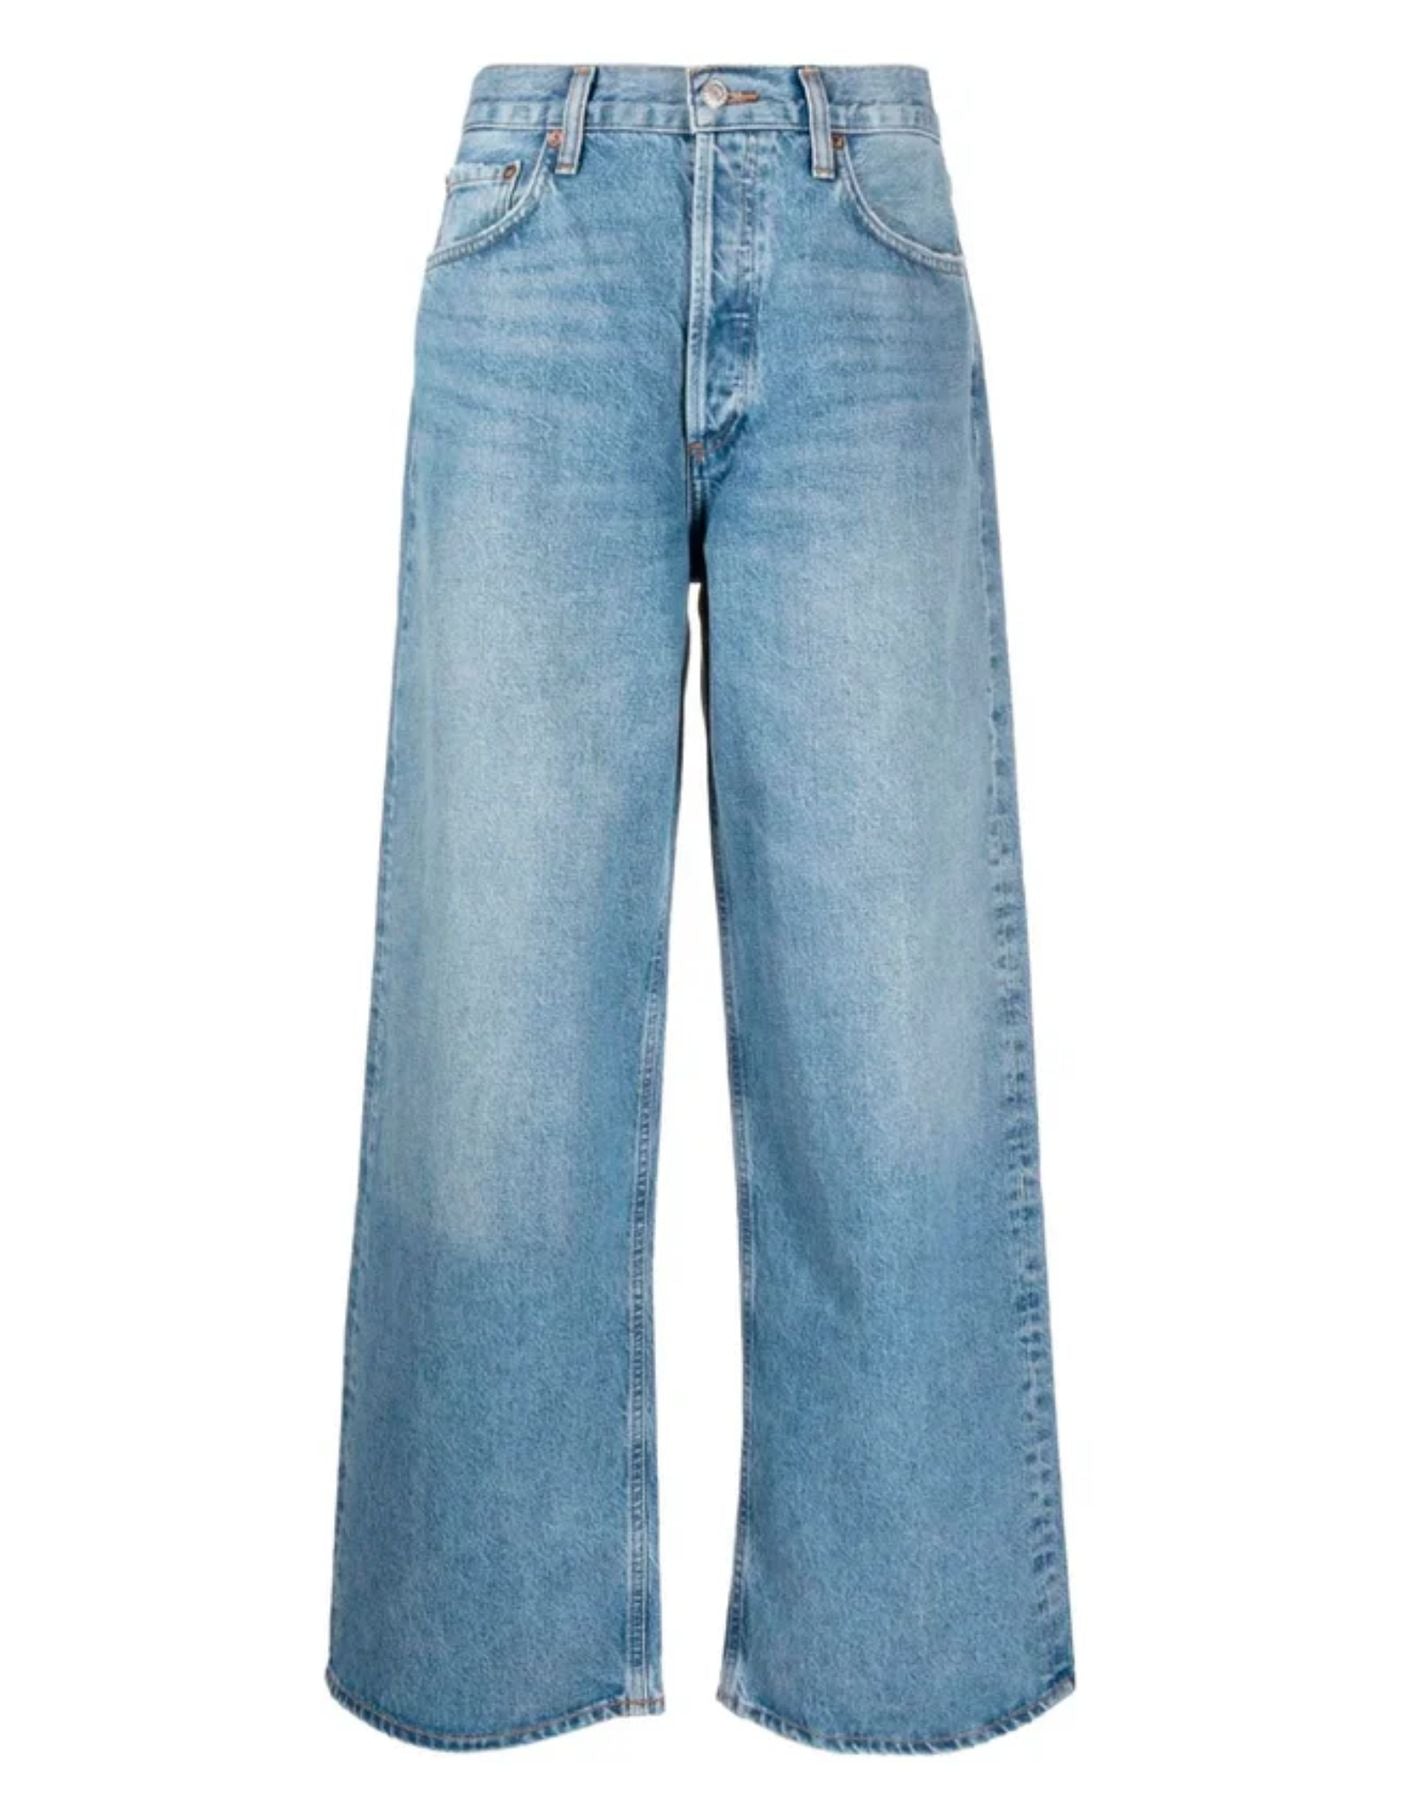 Jeans pour femme A9079-1535 Libertine Agolde